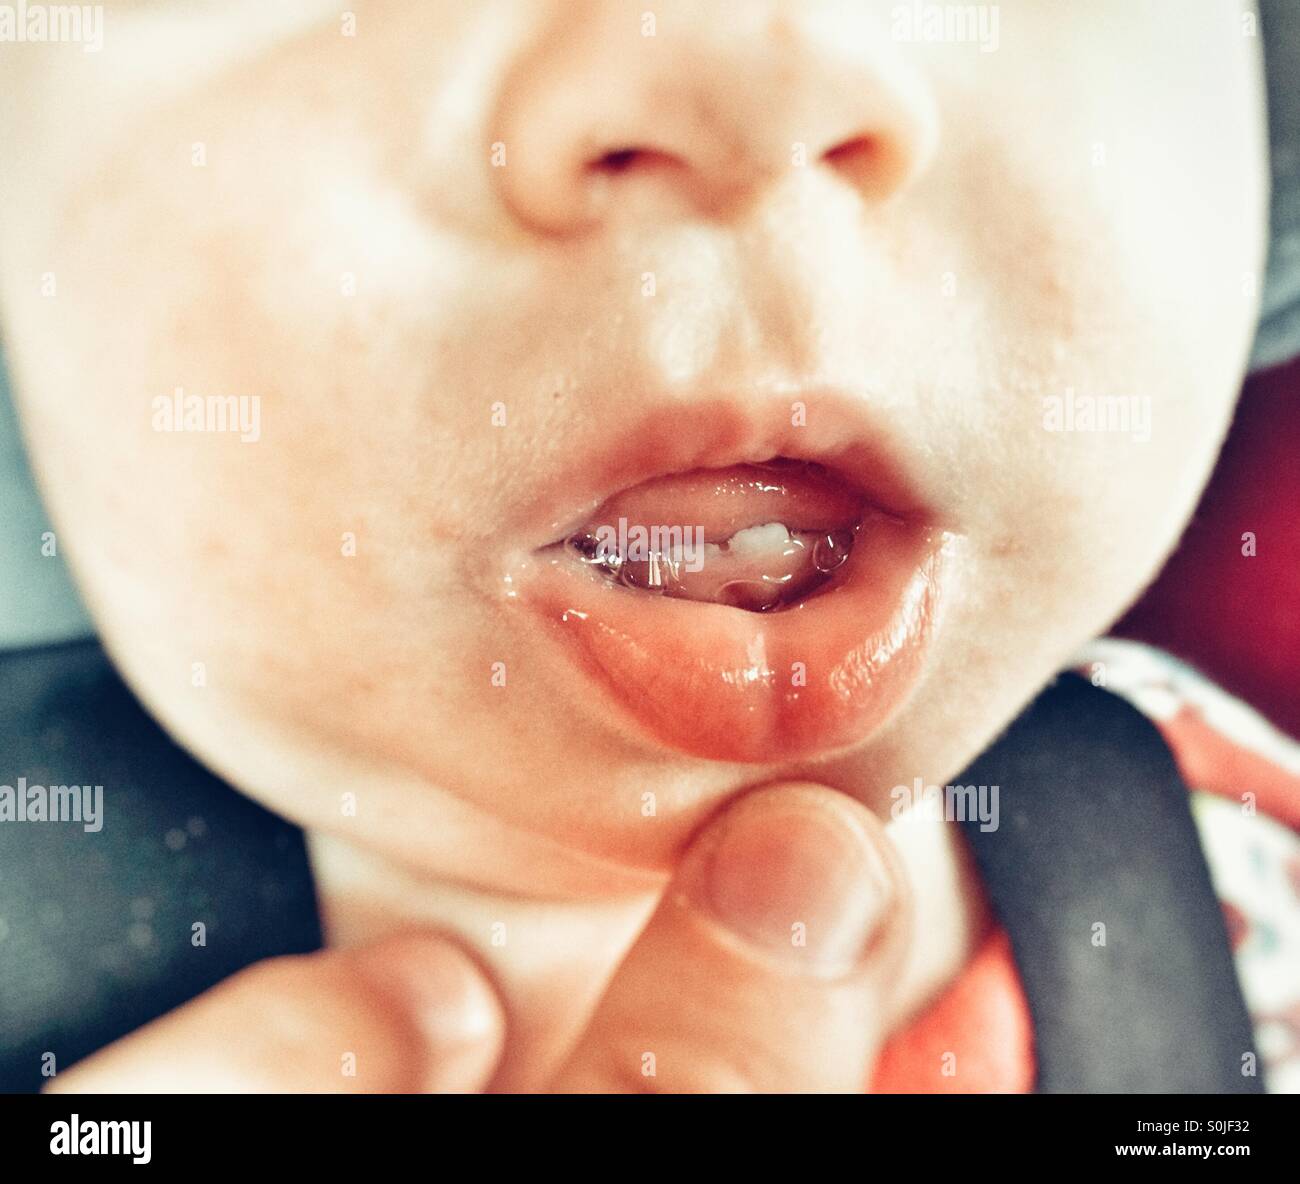 39+ nett Sammlung Wann Erste Zähne Baby : In Dieser Reihenfolge Zahnen Babys - Bei den meisten säuglingen zeigt sich der erste zahn zwischen dem vierten und sechsten monat.